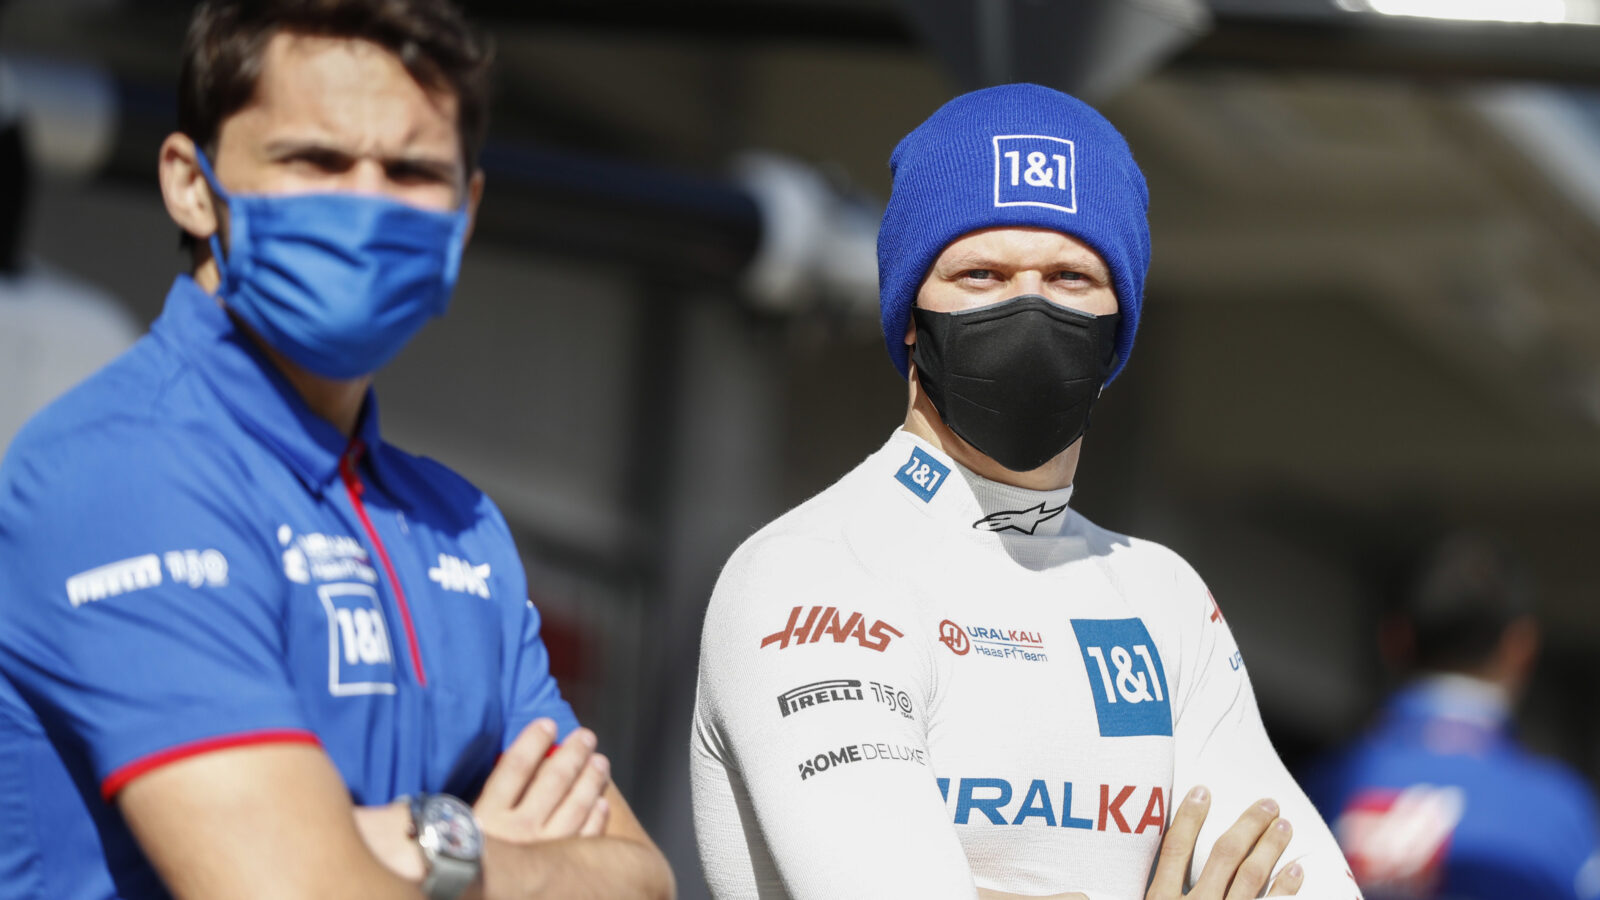 Widersprüchliche Gerüchte zu Haas-Fahrer-Duo